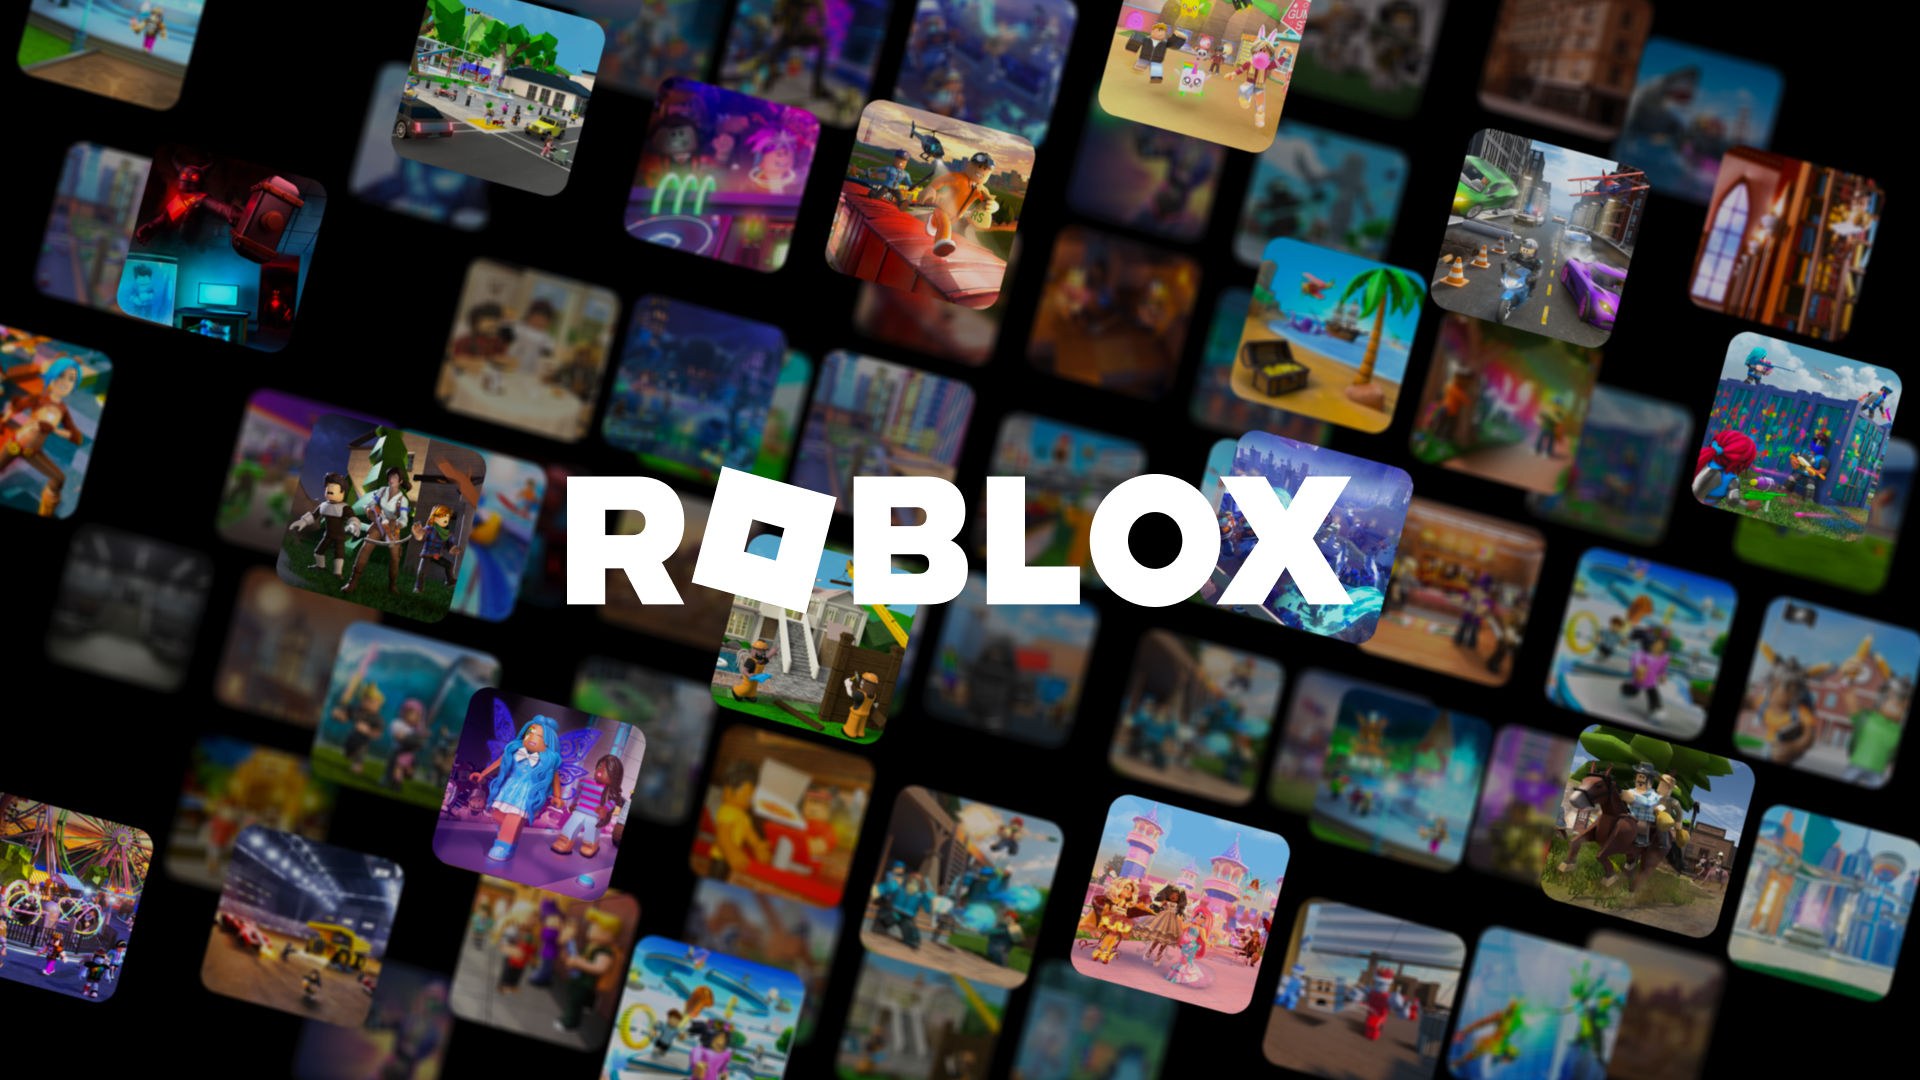 Tăng tốc đổi mới: Tám nhà sáng lập công ty khởi nghiệp đang tiếp tục đổi mới như thế nào tại Roblox